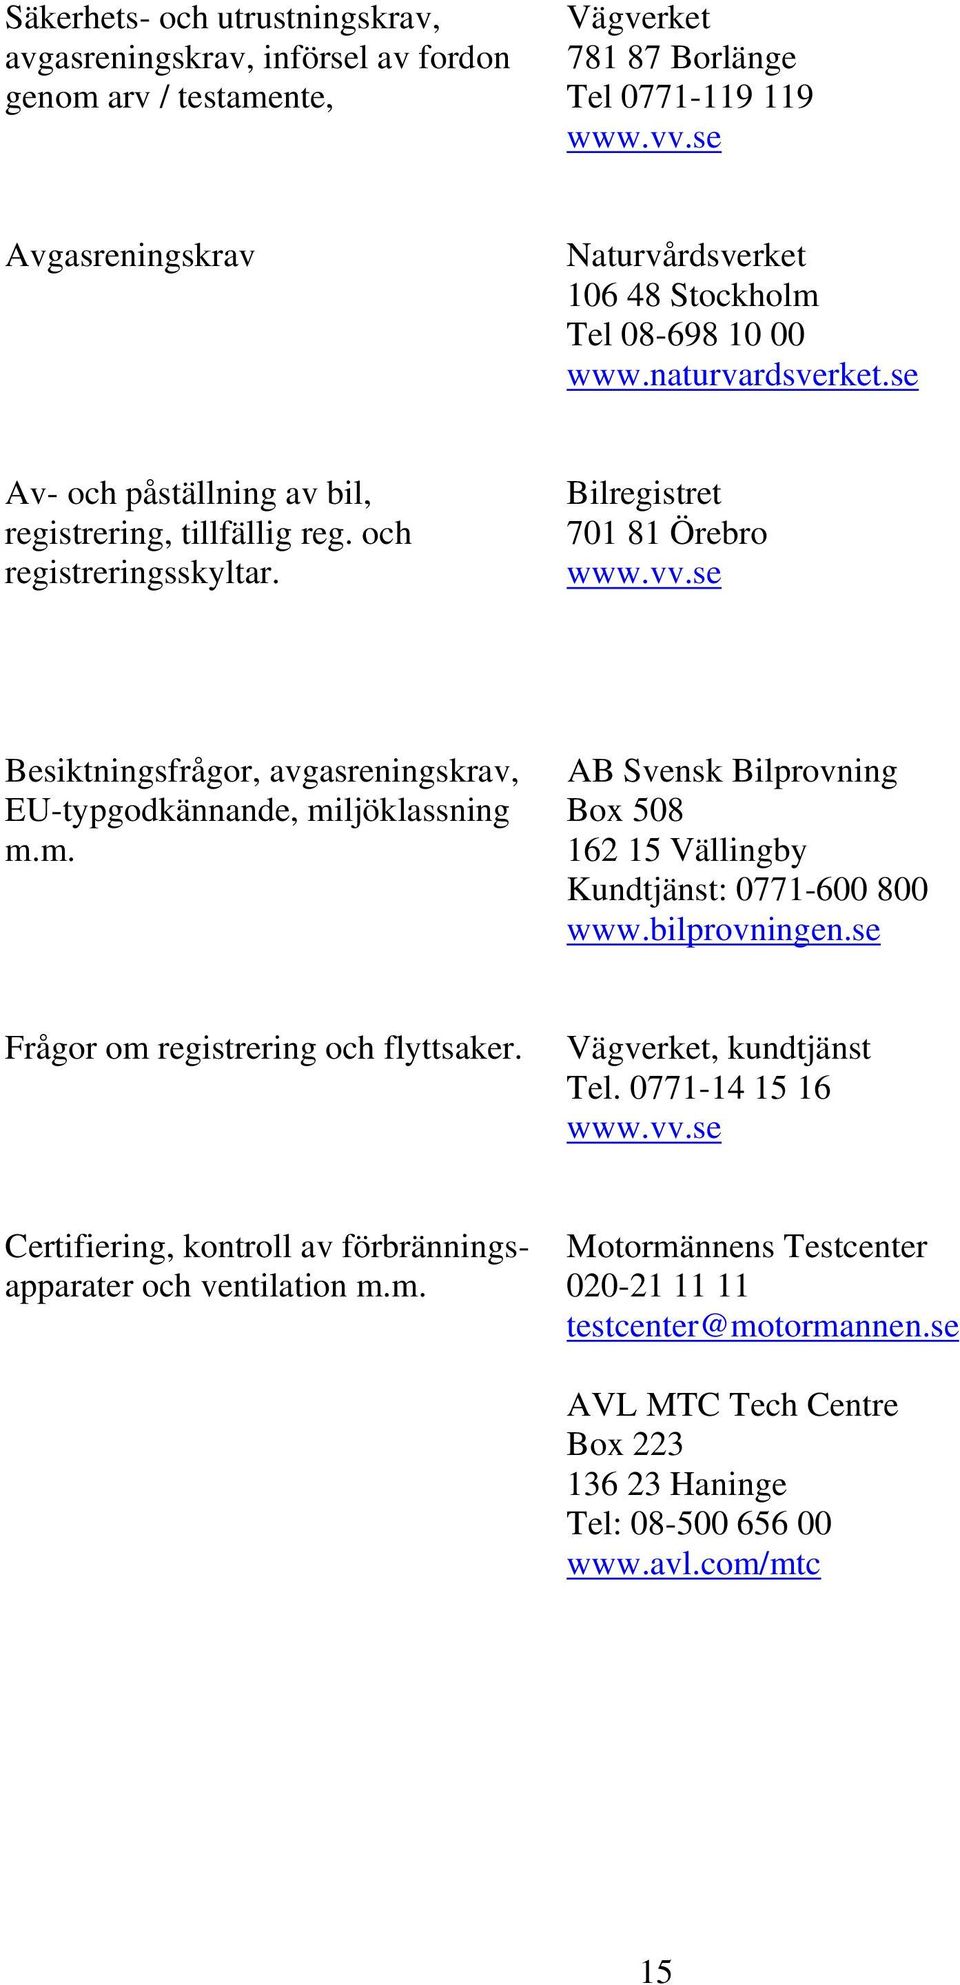 Bilregistret 701 81 Örebro www.vv.se Besiktningsfrågor, avgasreningskrav, AB Svensk Bilprovning EU-typgodkännande, miljöklassning Box 508 m.m. 162 15 Vällingby Kundtjänst: 0771-600 800 www.